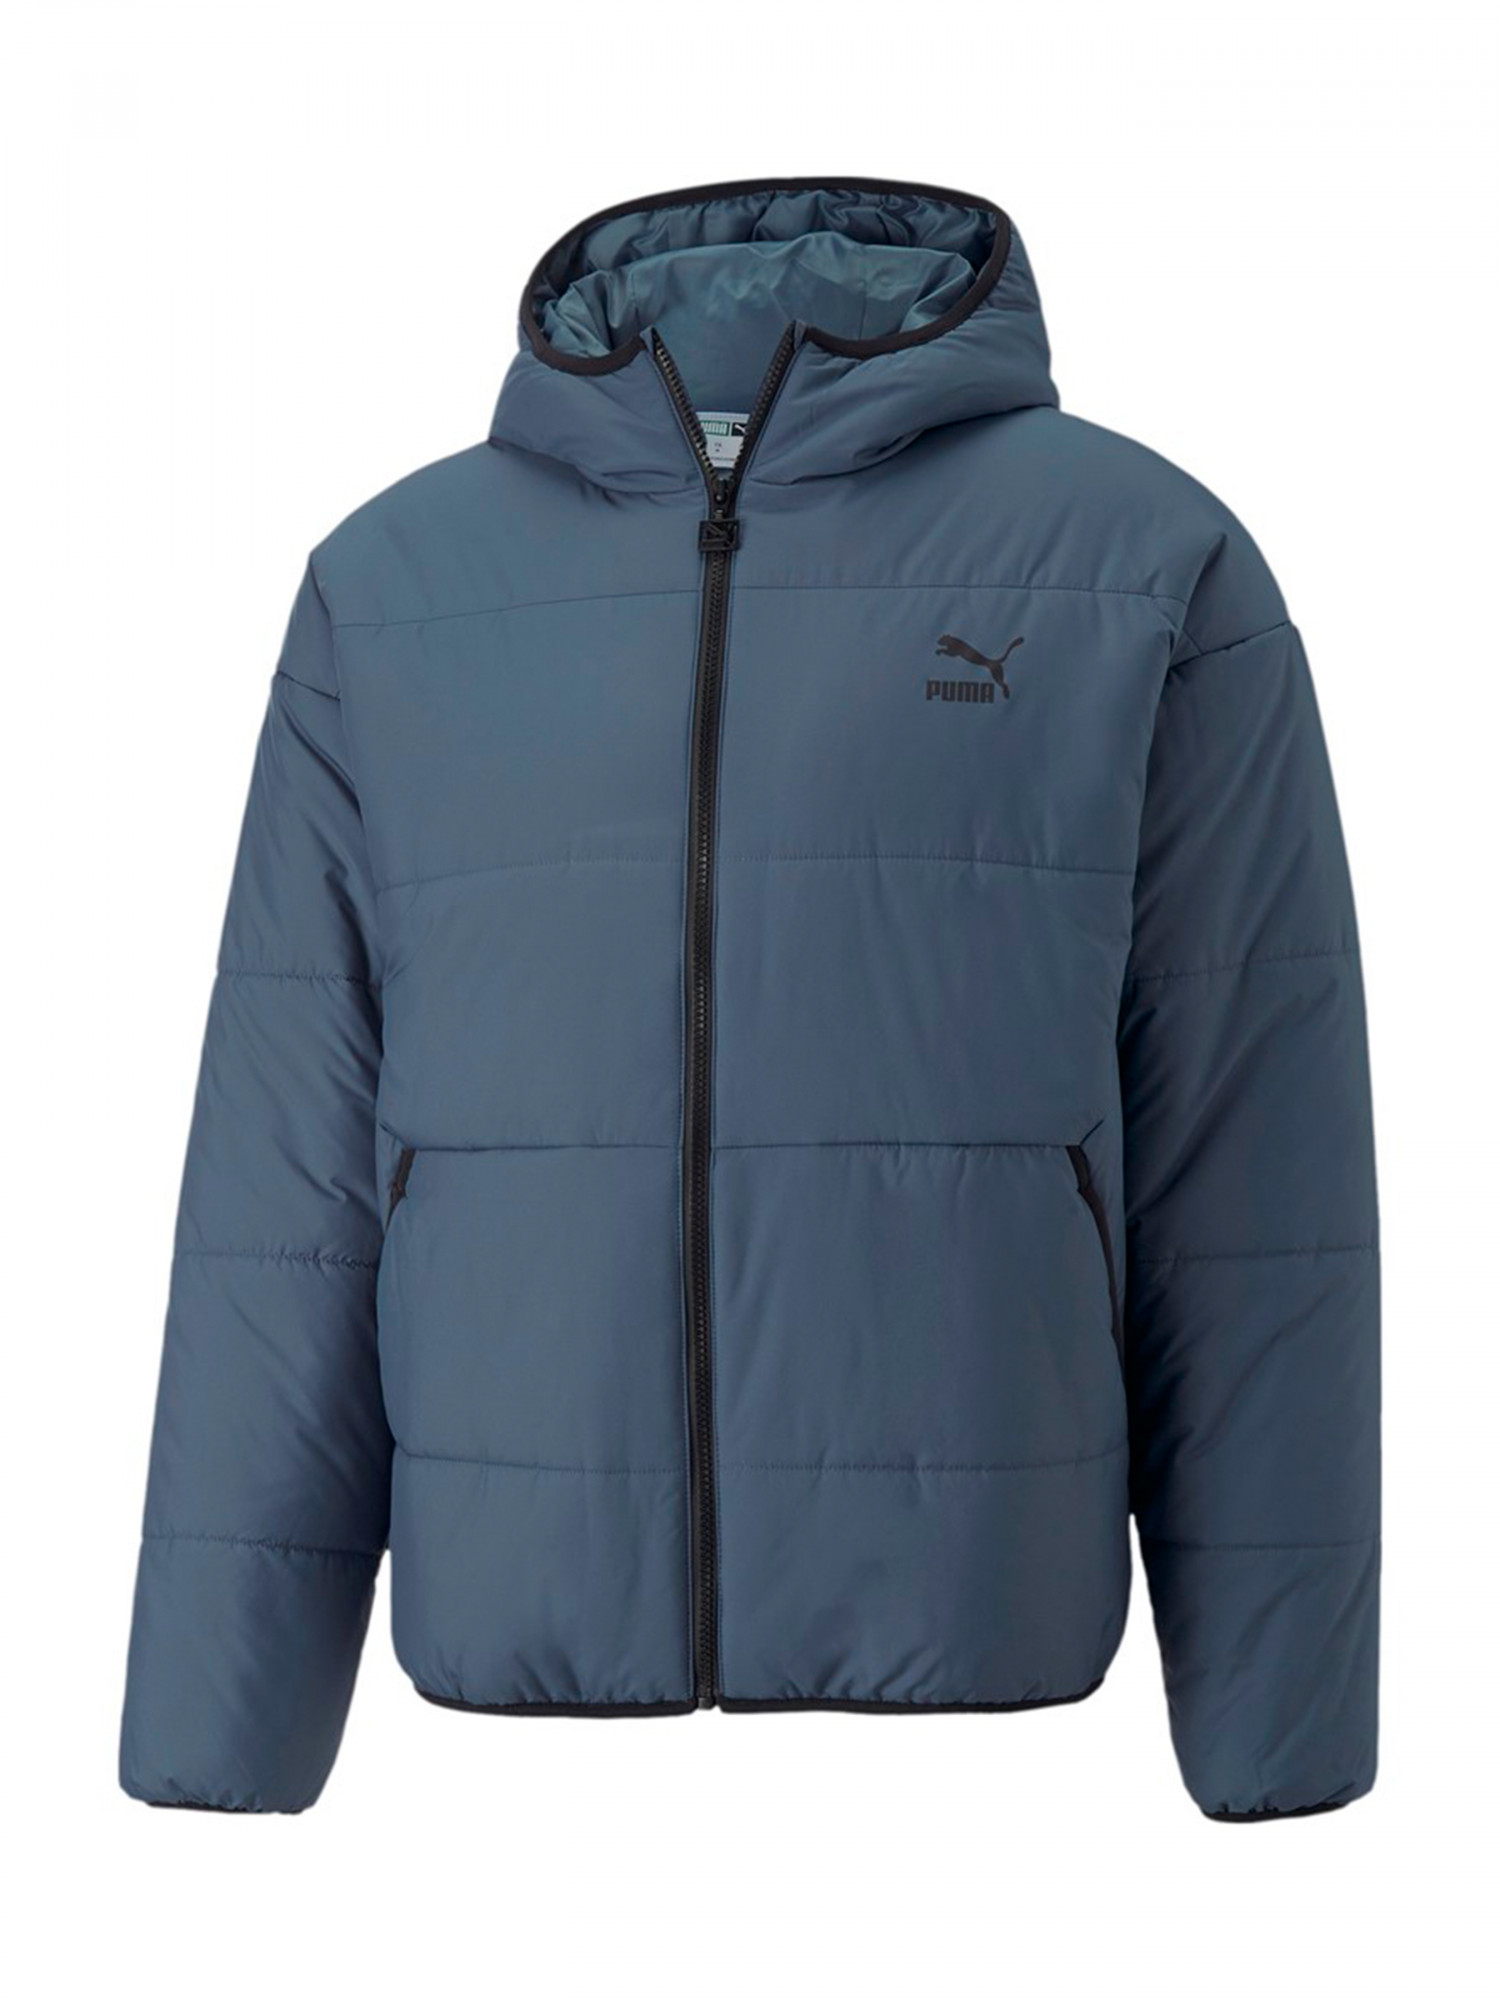 Куртка мужская Puma Classics Padded Jacket синяя 53557518 изображение 2